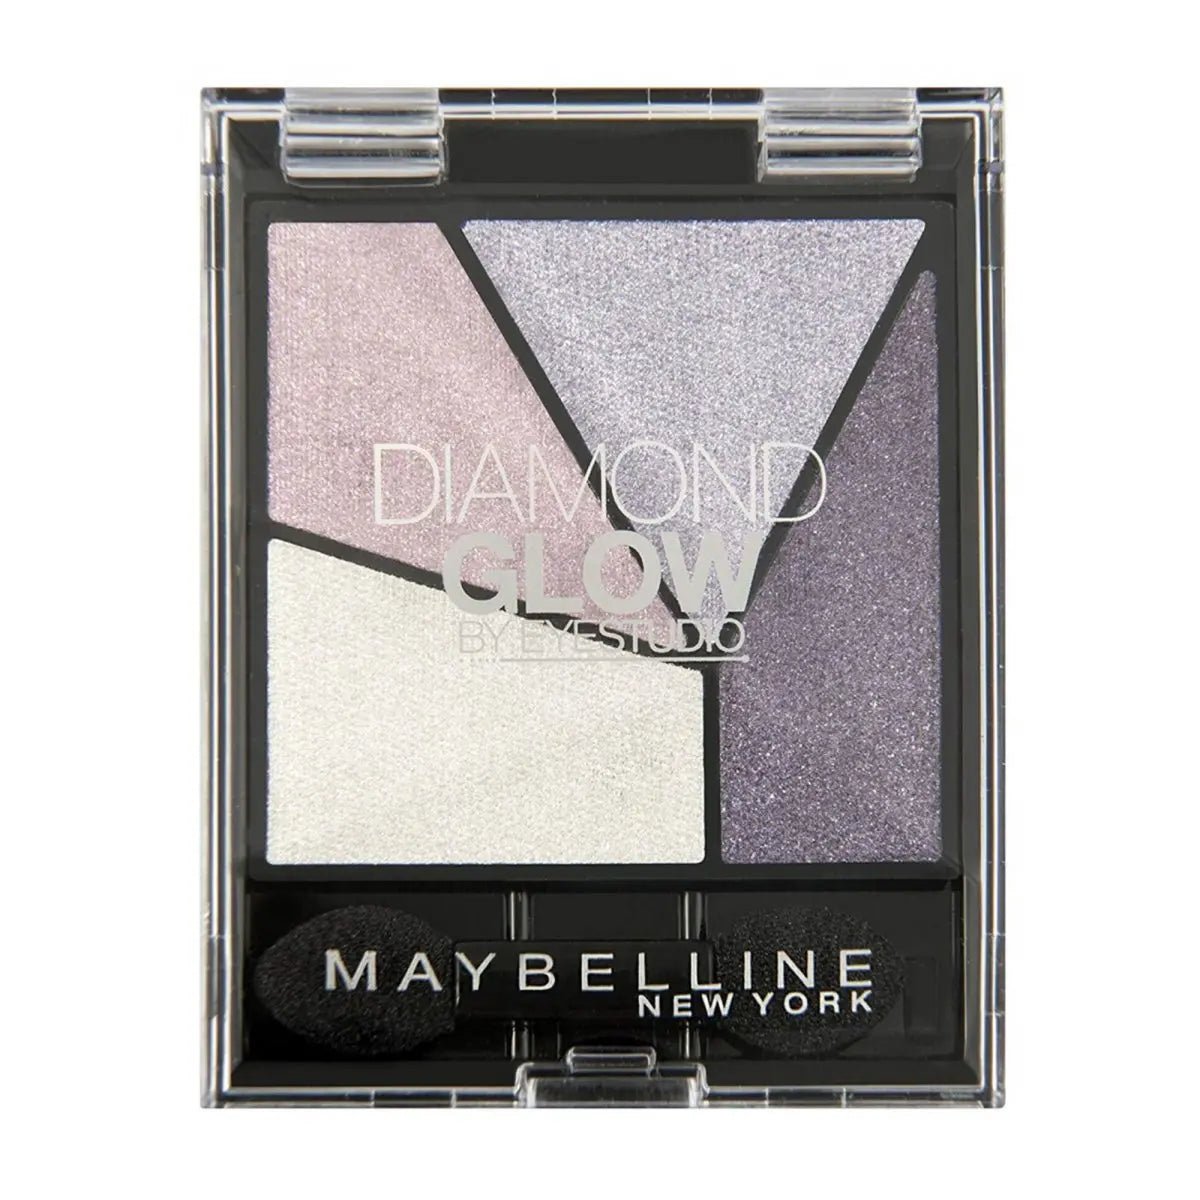 Image of Maybelline Eye Studio Eyeshadow 01 Purple Drama Quad Diamond Glow